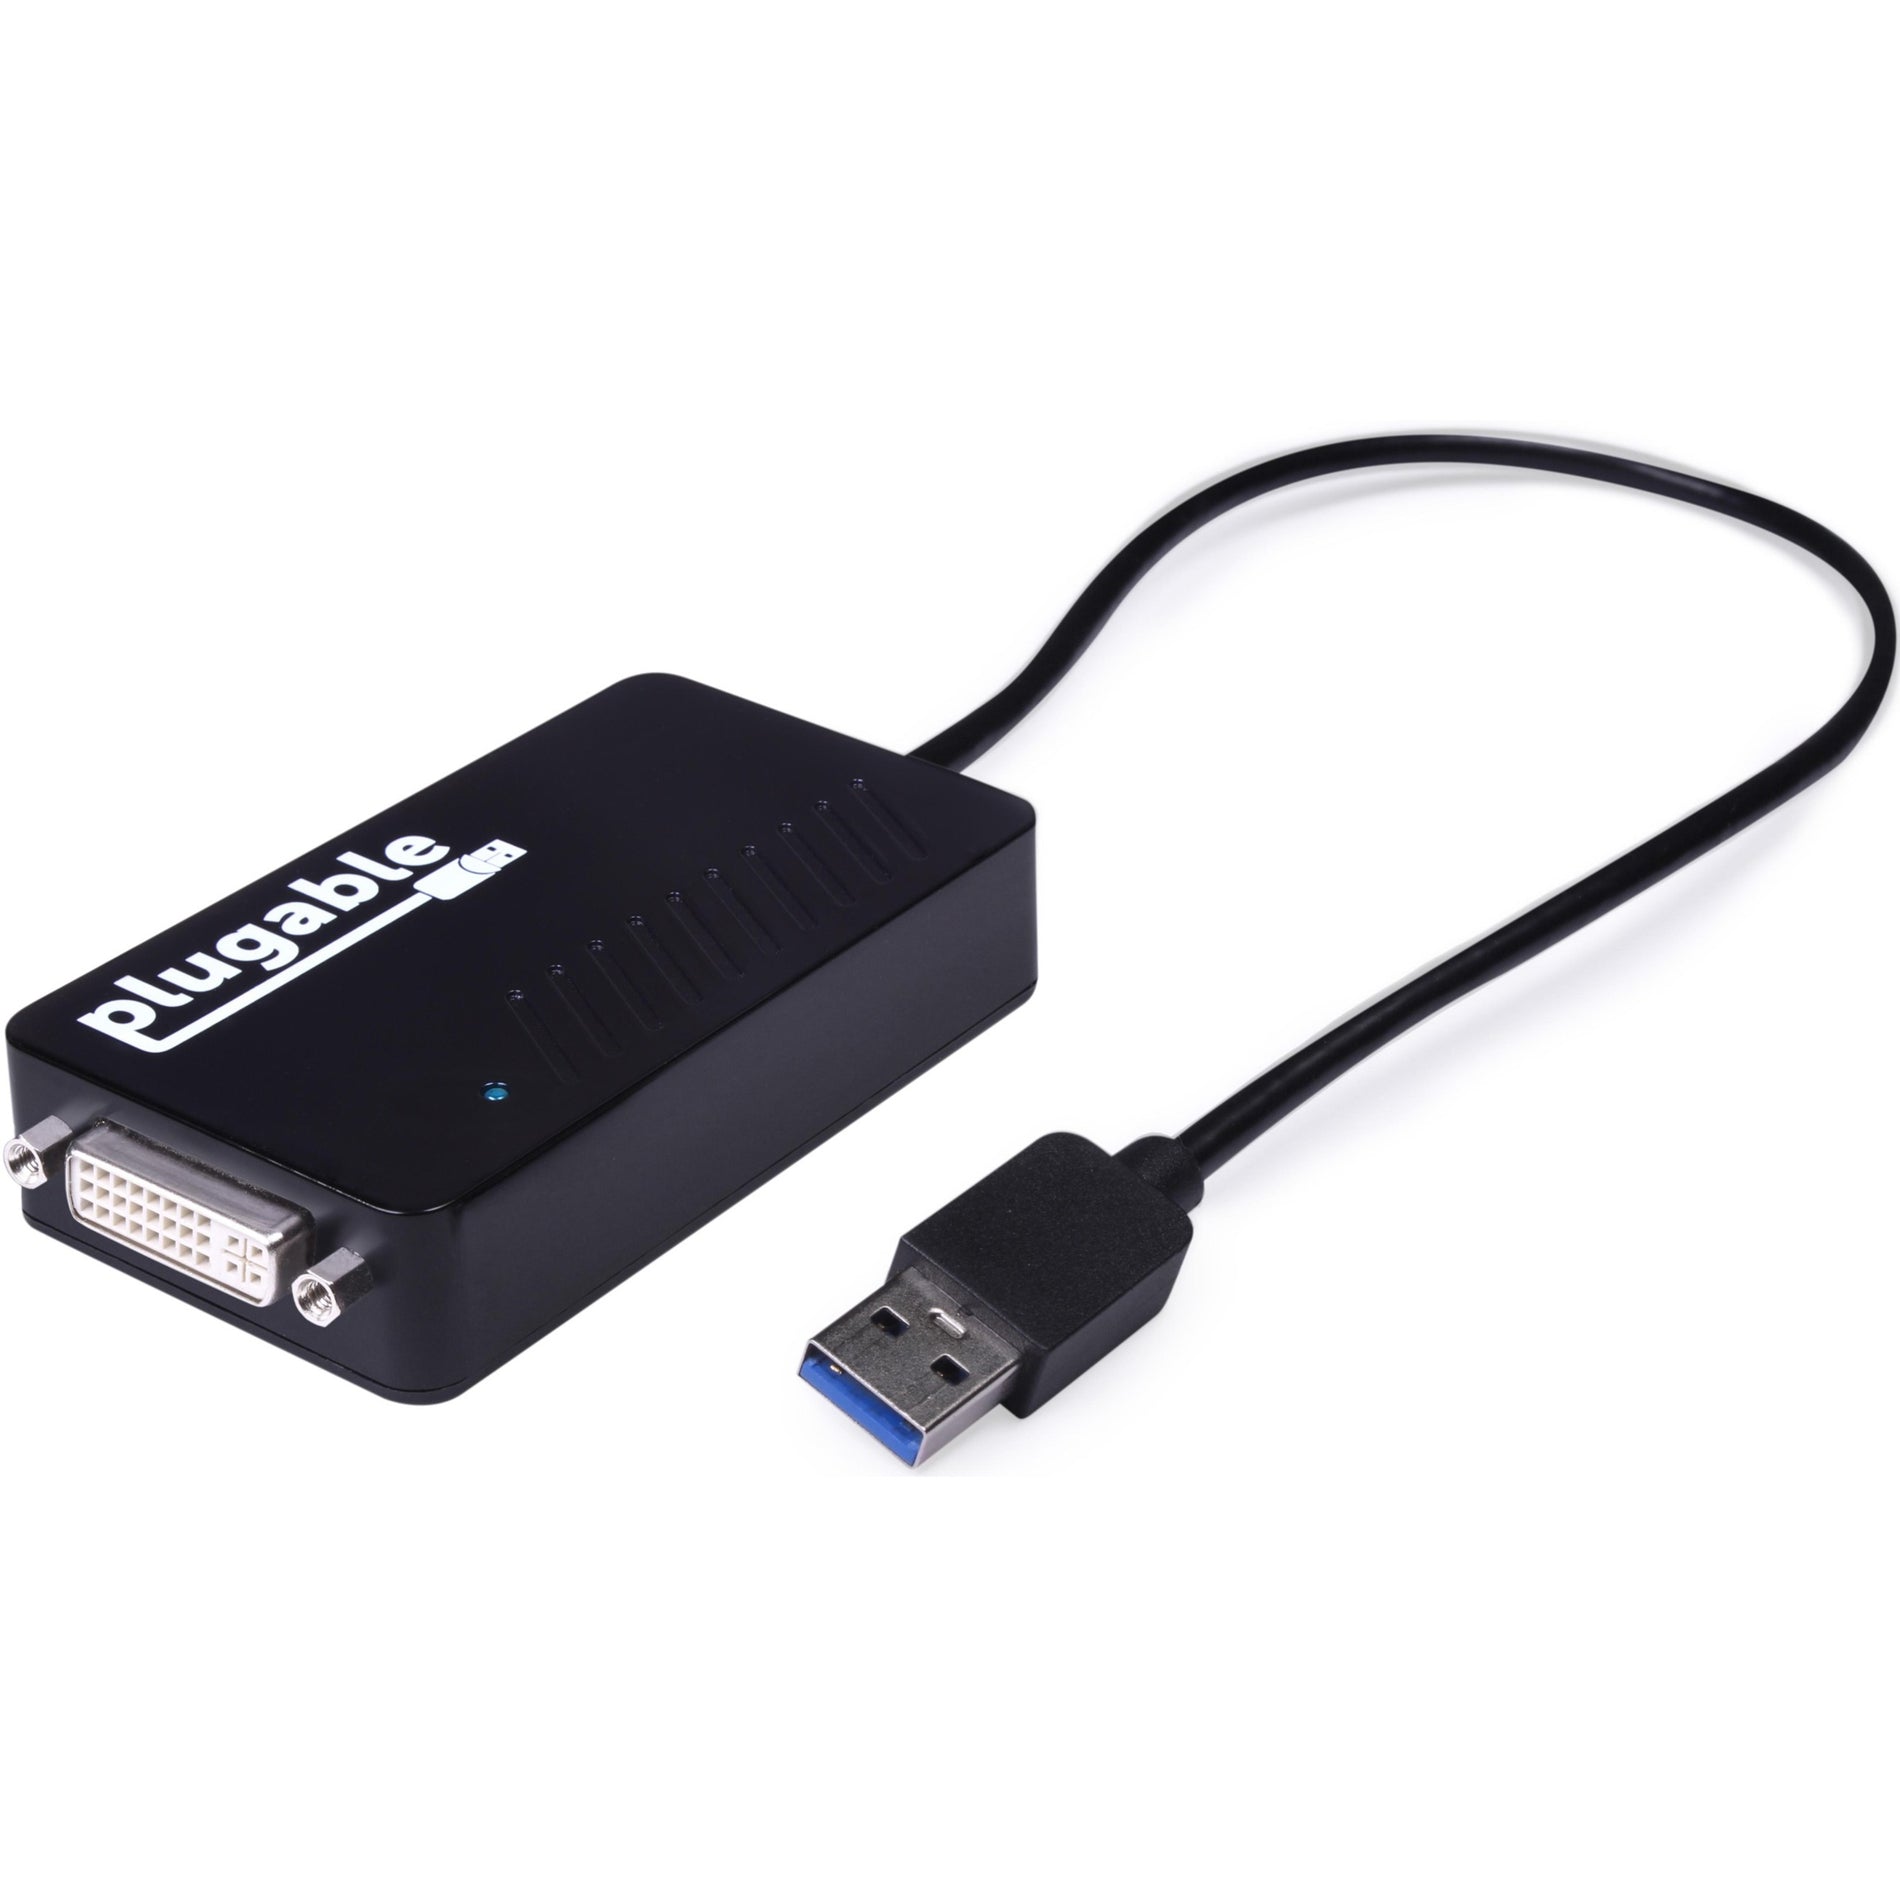 بلوغابل UGA-3000 محول HDMI/DVI/VGA USB 3.0 لعرض متعدد الشاشات، توسيع العرض بسهولة للكمبيوتر العلامة التجارية: Plugable